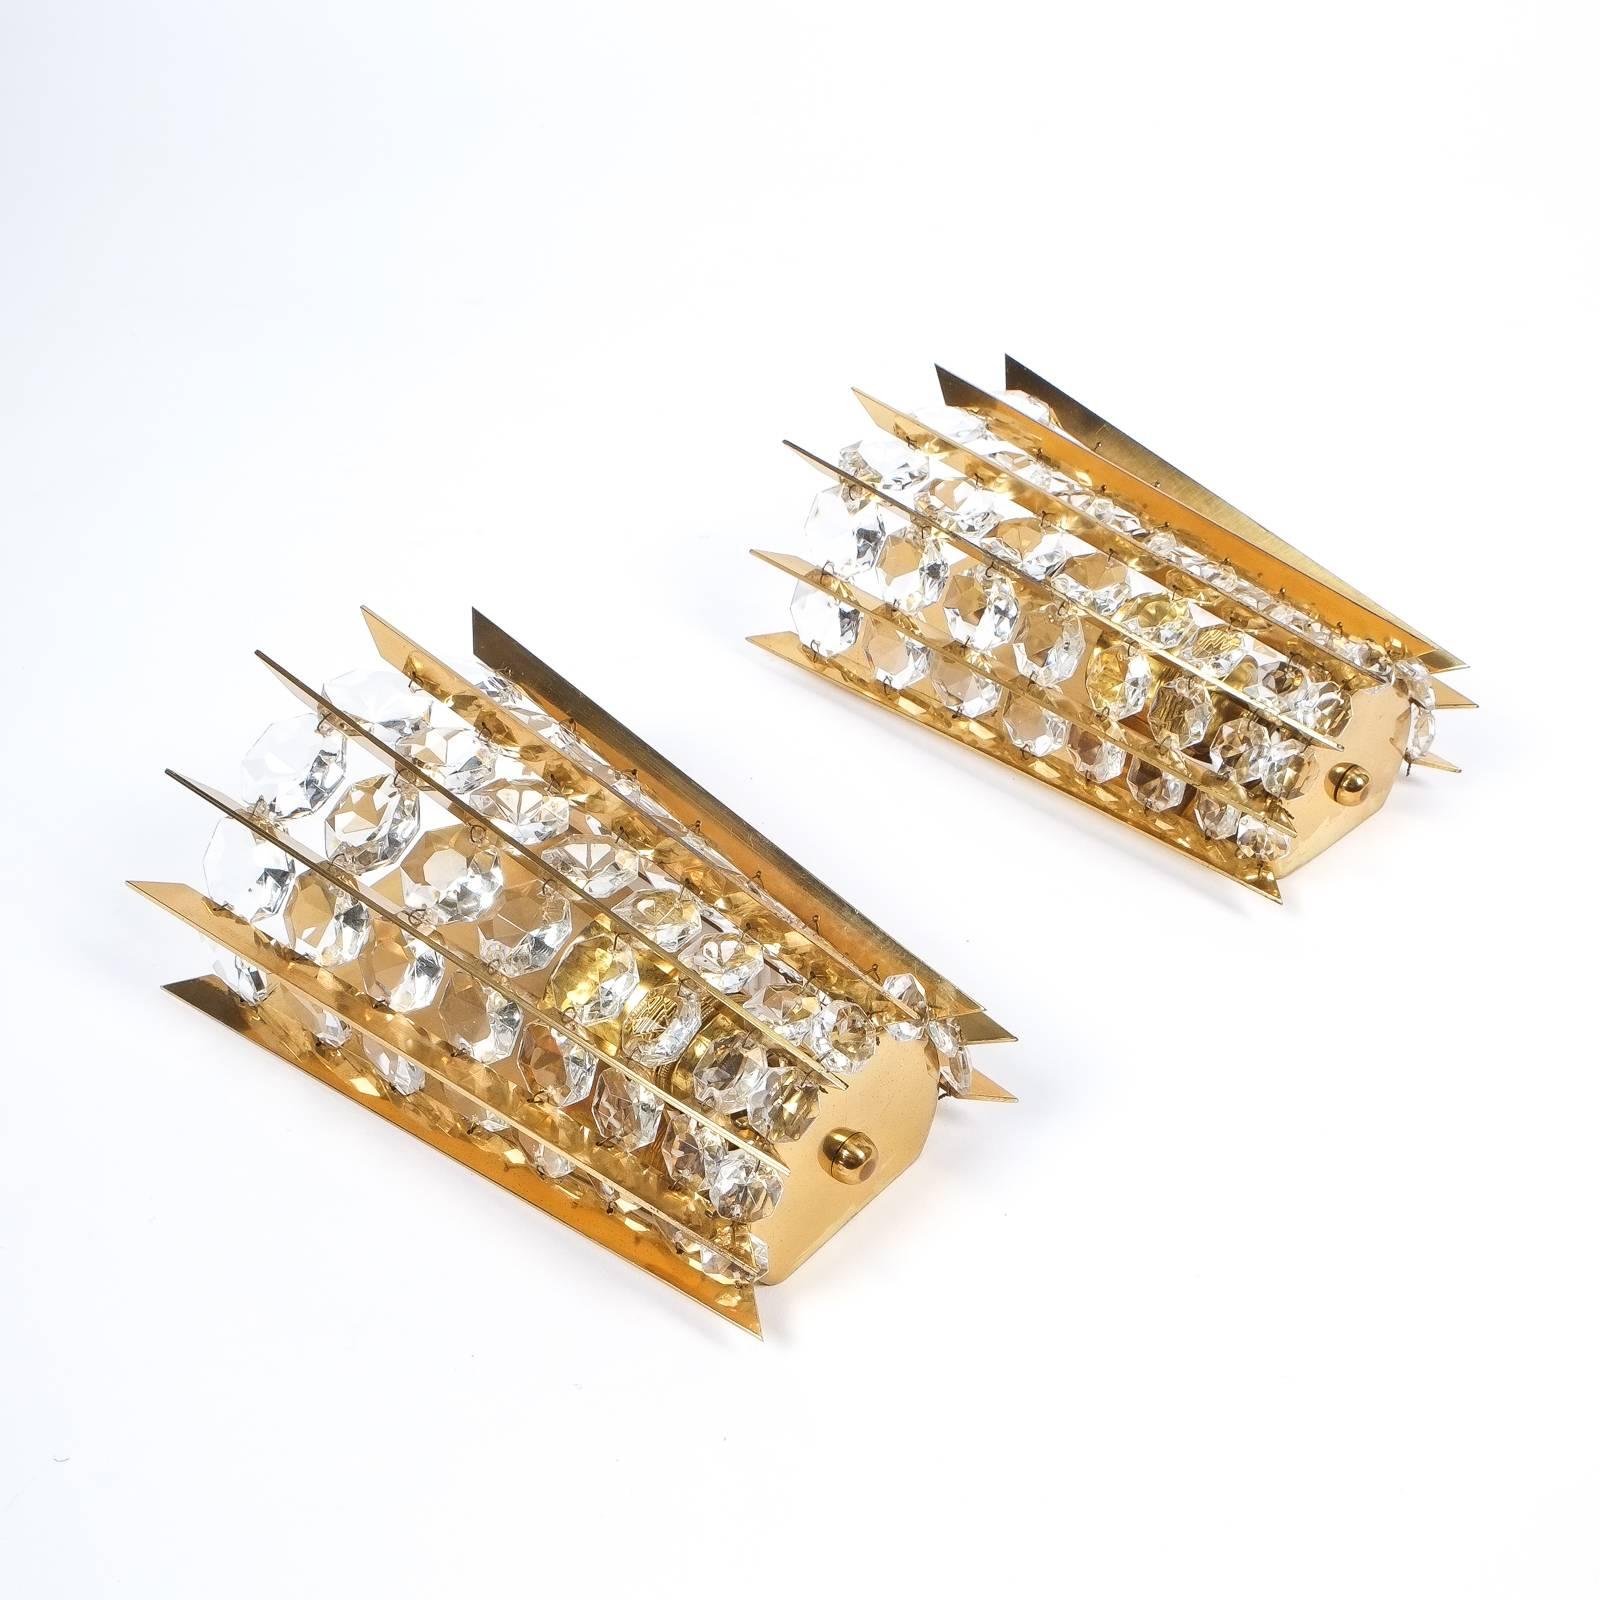 Rare ensemble de 5 appliques identiques par Bakalowits & Sohn, Autriche, vers 1955 - Prix à l'unité

Ensemble radial d'objets en laiton aux formes expressives, avec des rangées de cristaux taillés en diamant dont la taille augmente ou diminue. Ces